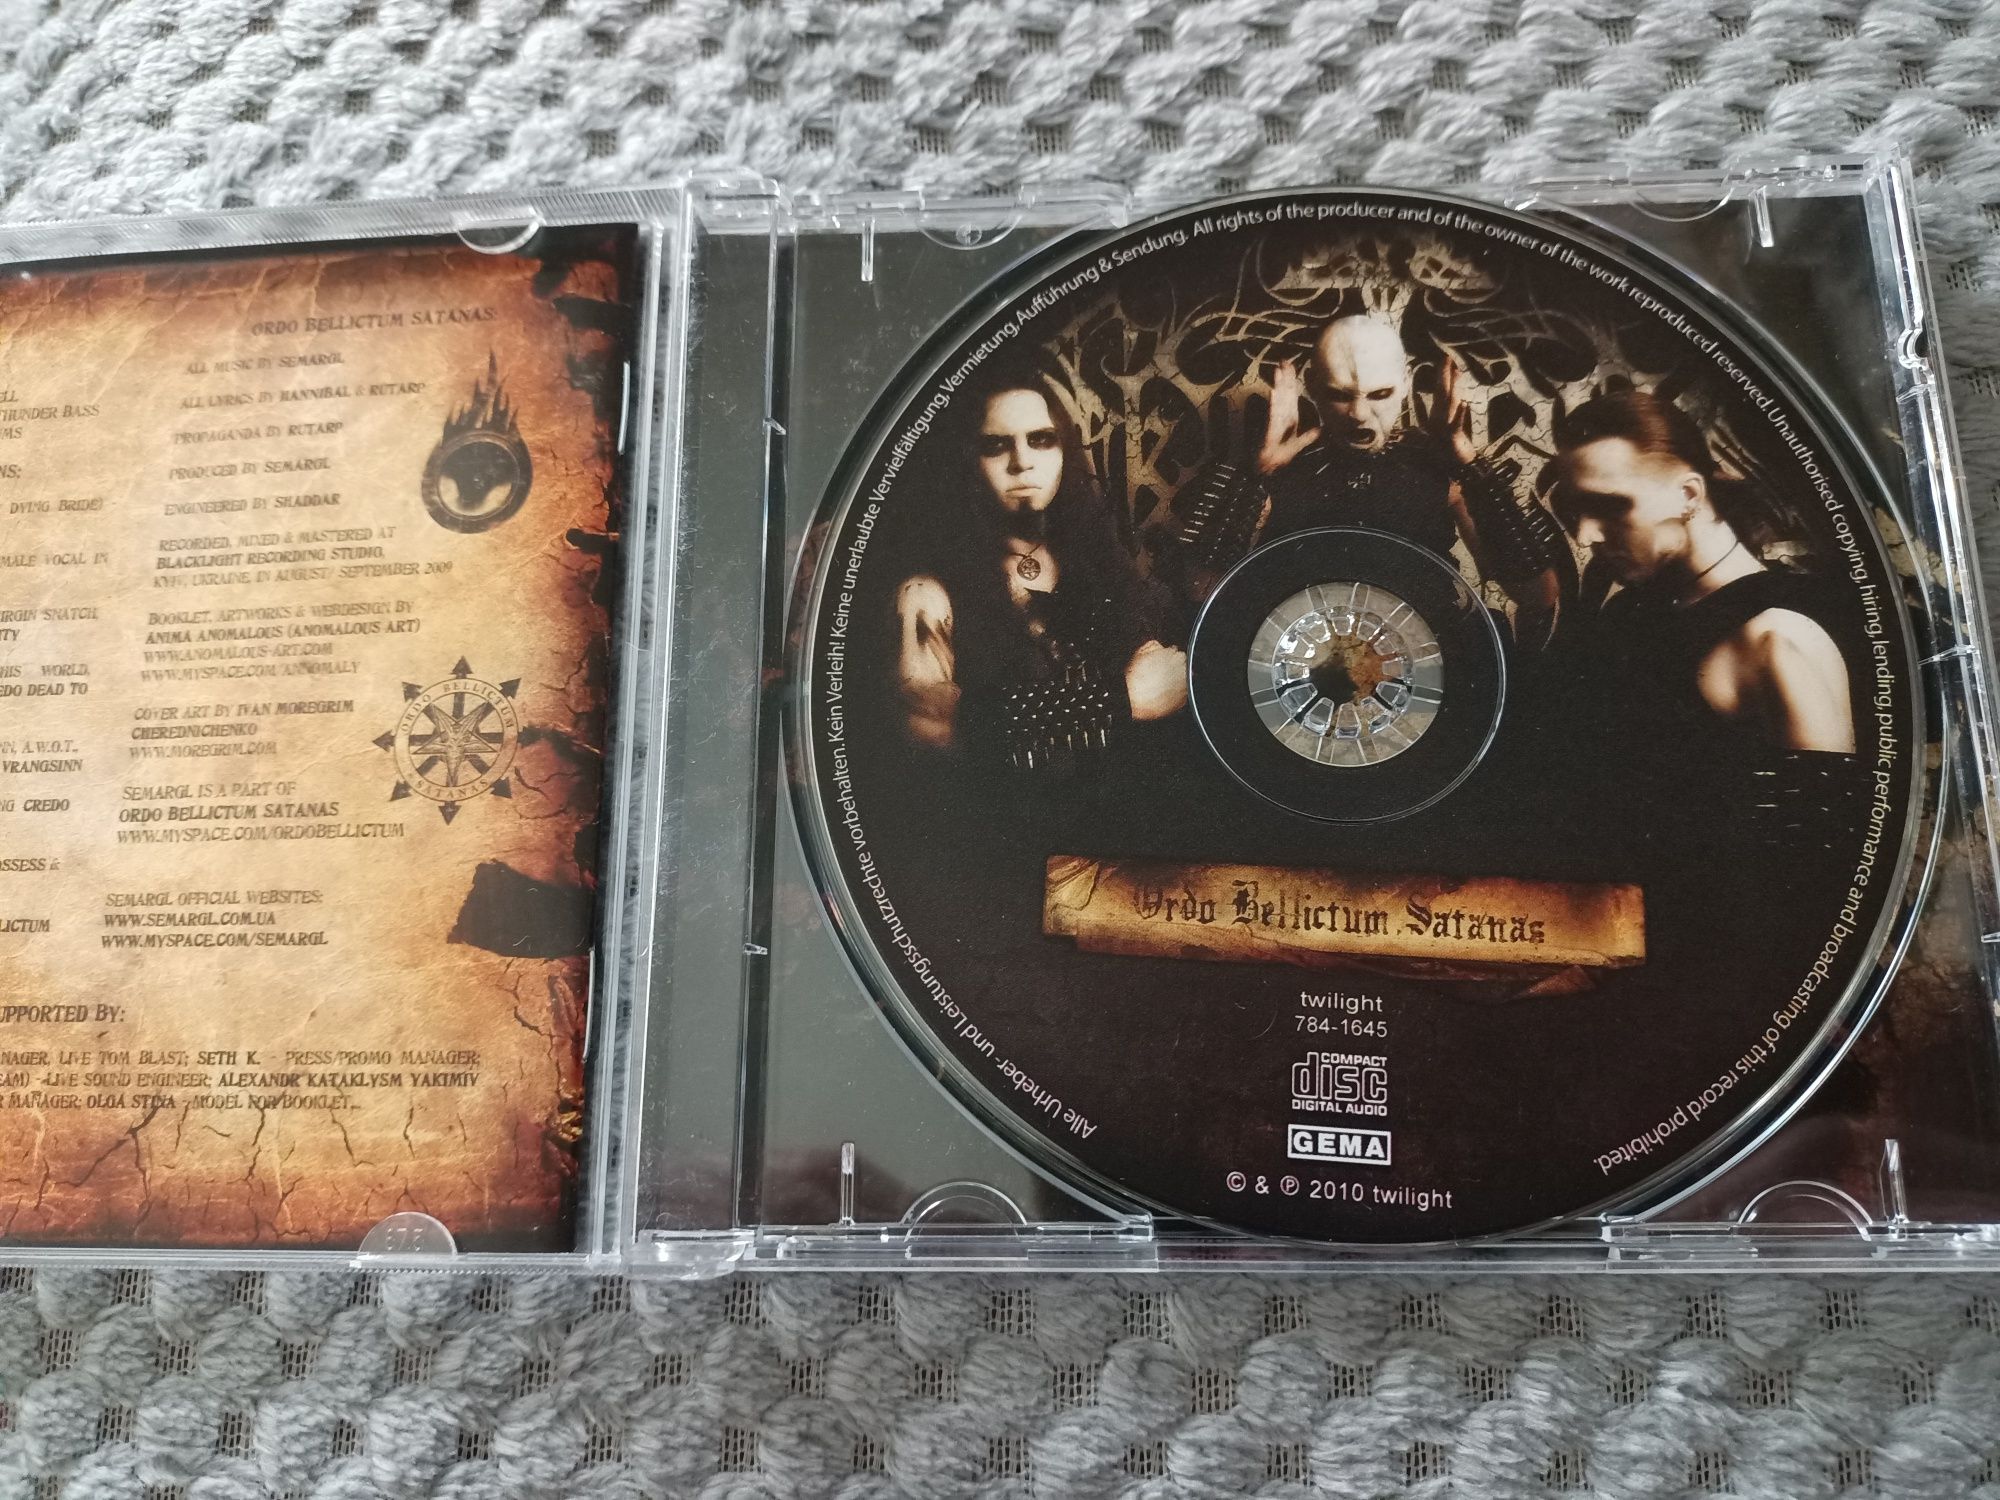 Semargl - Ordo Bellictum Satanas (CD, Album)(Rock&Roll,Industrial,Blac